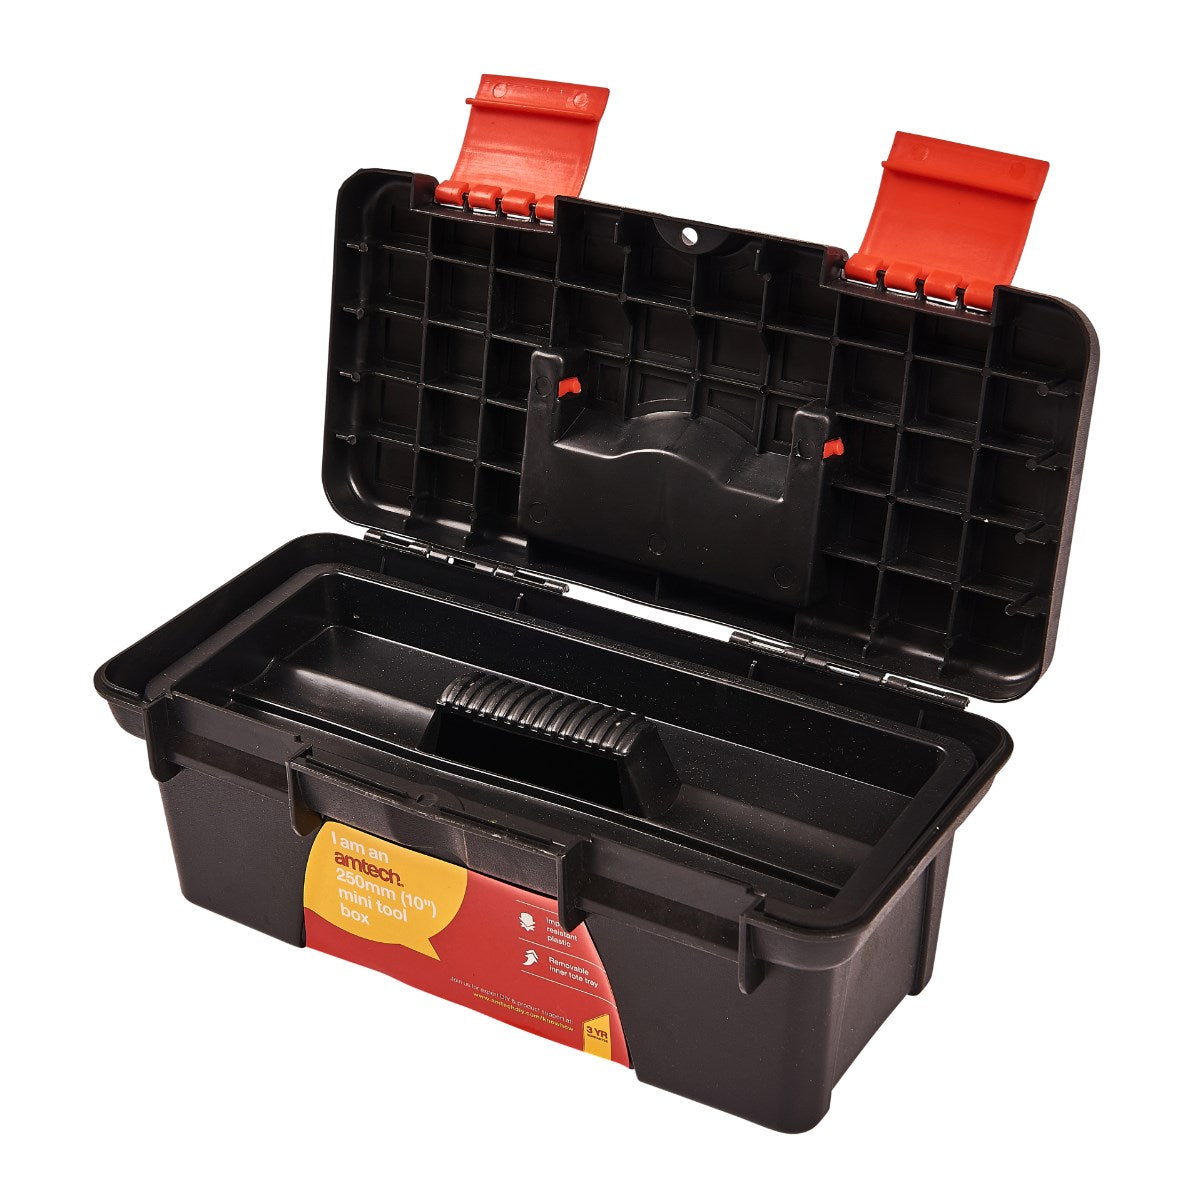 25pc mini tool kit - Amtech